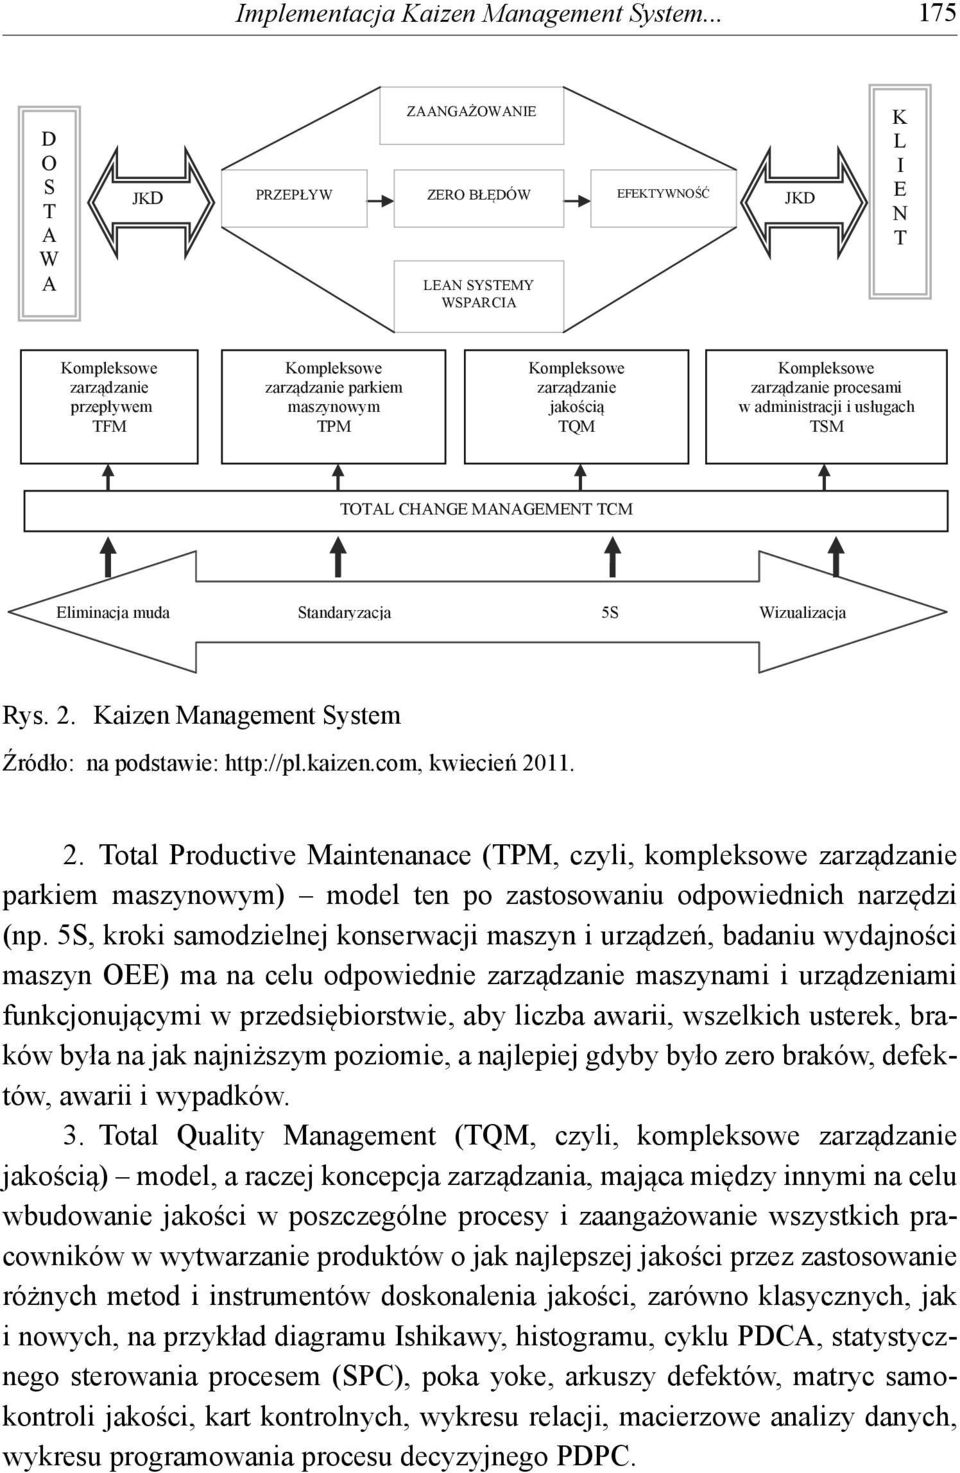 Kompleksowe zarządzanie jakością TQM Kompleksowe zarządzanie procesami w administracji i usługach TSM TOTAL CHANGE MANAGEMENT TCM Eliminacja muda Standaryzacja 5S Wizualizacja Rys. 2.